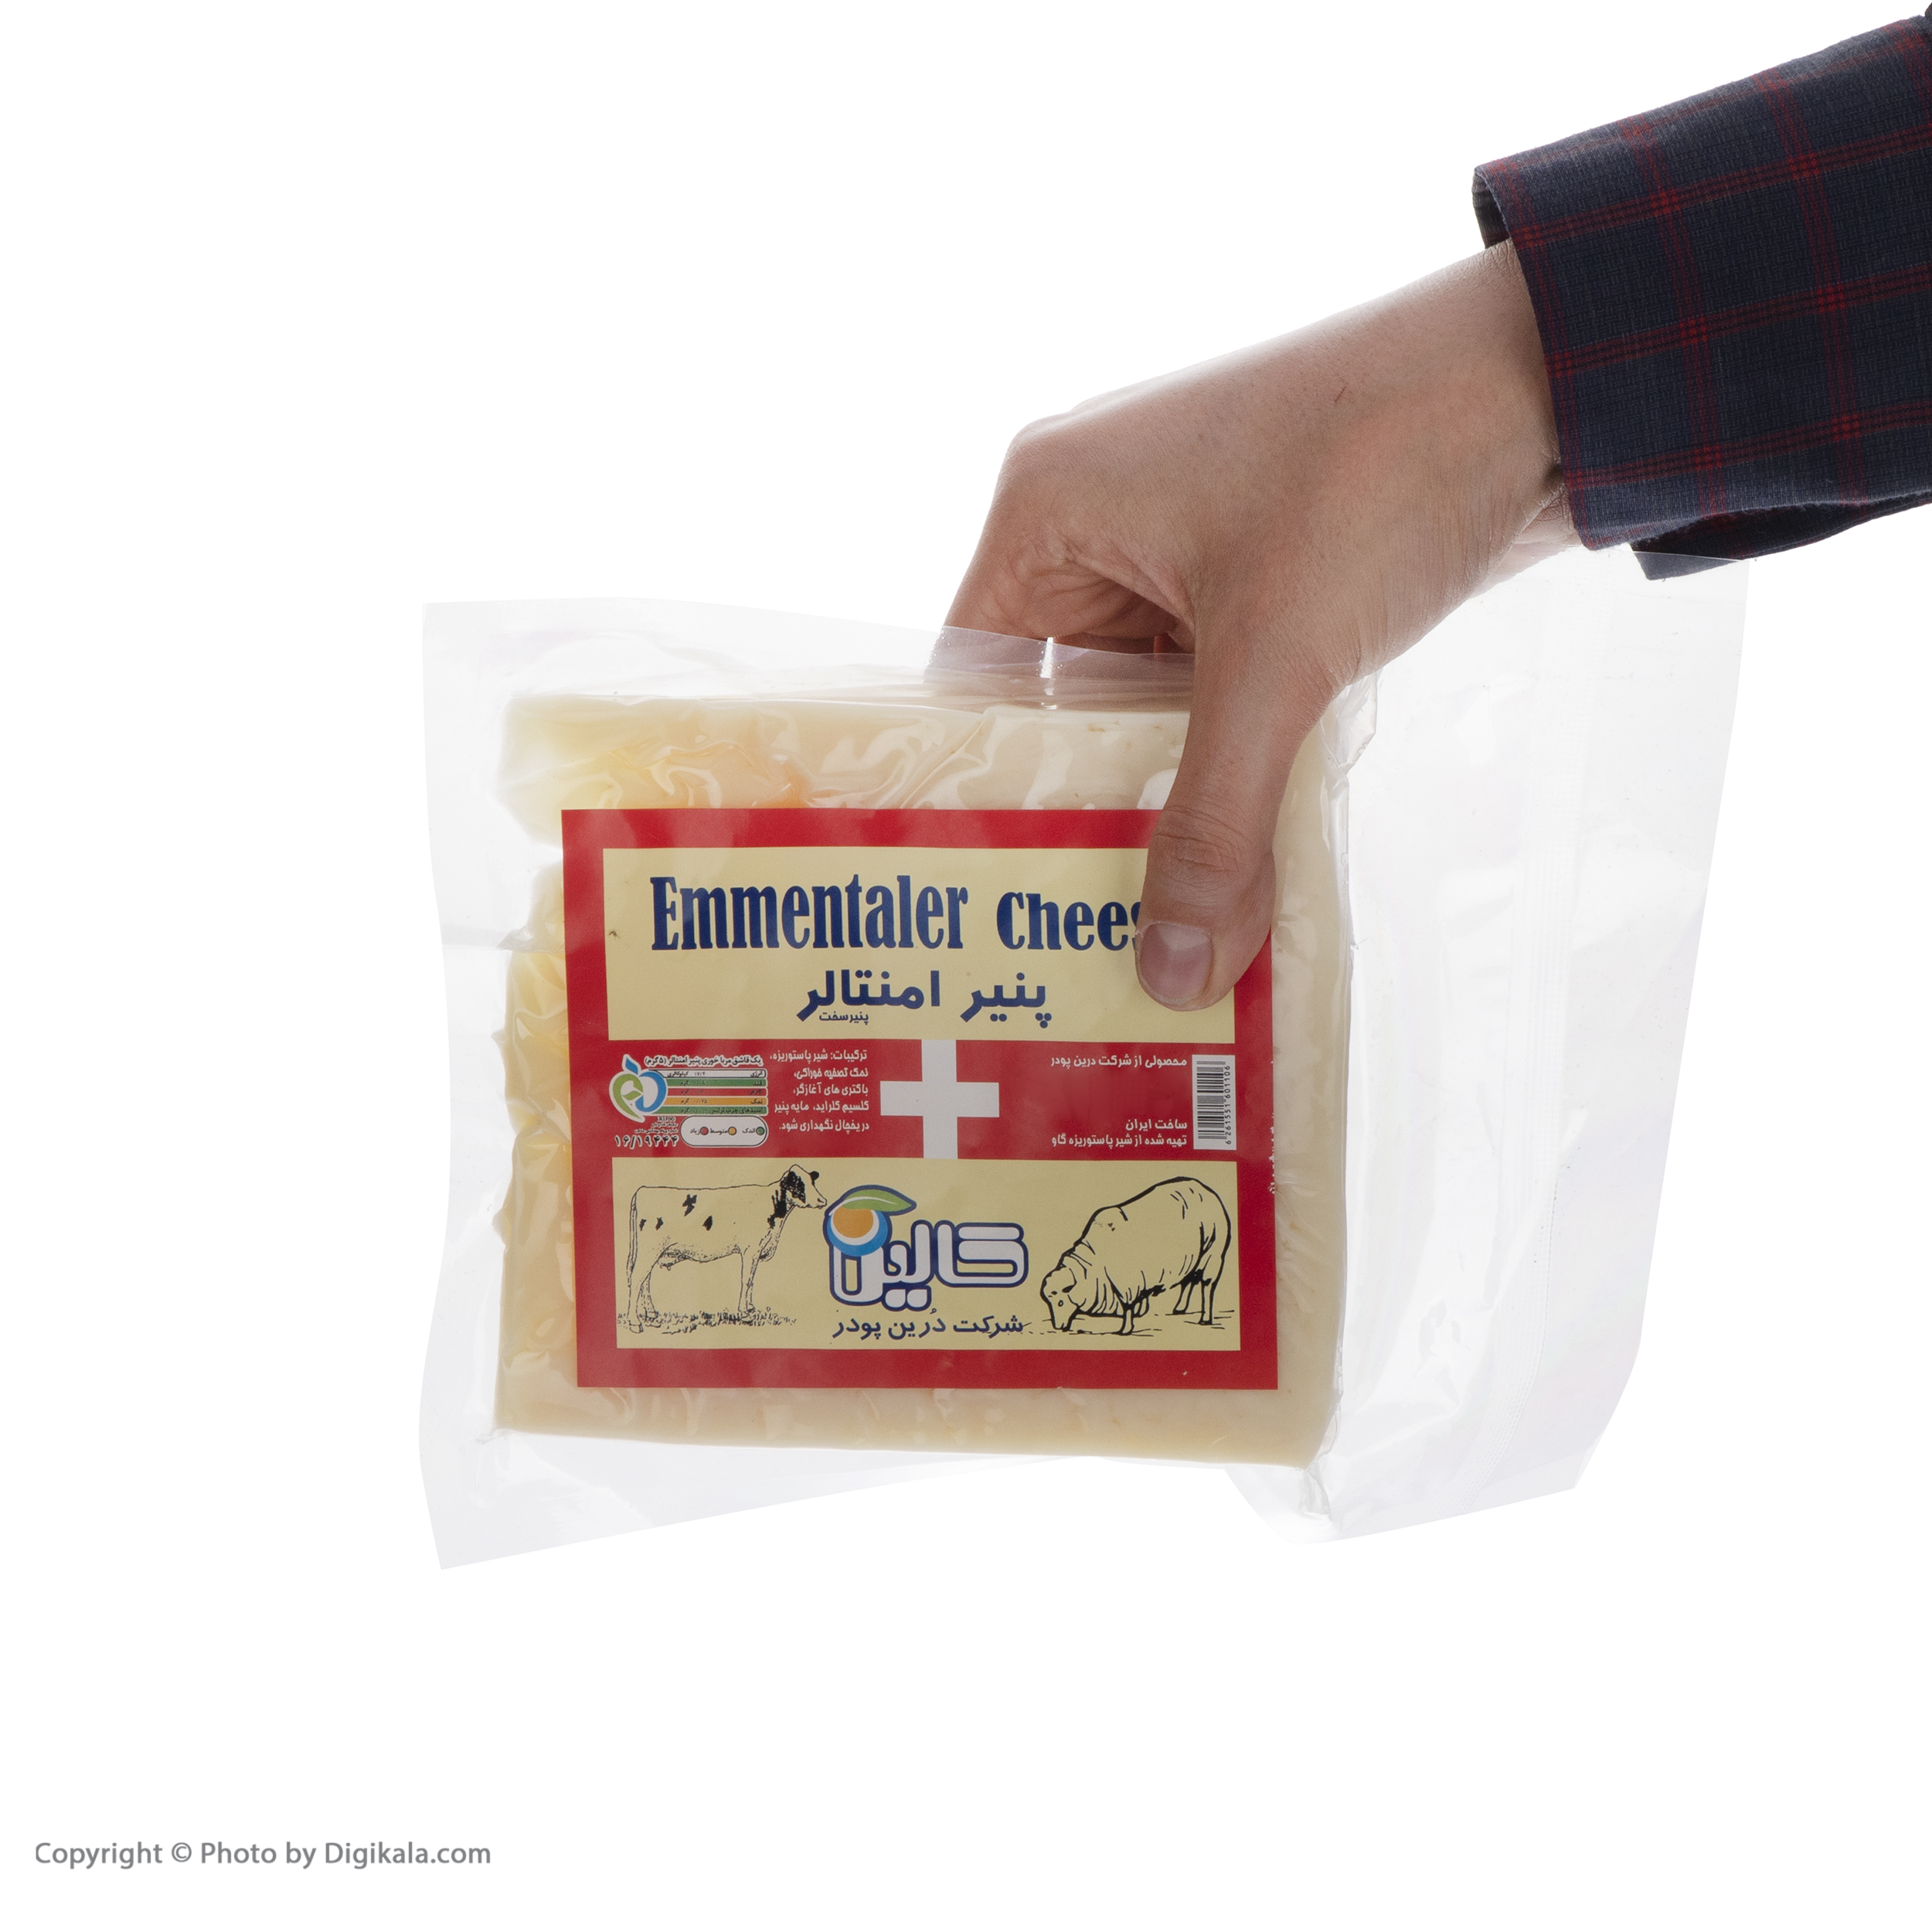 پنیر امنتالر طبیعی کالین مقدار 350 گرم